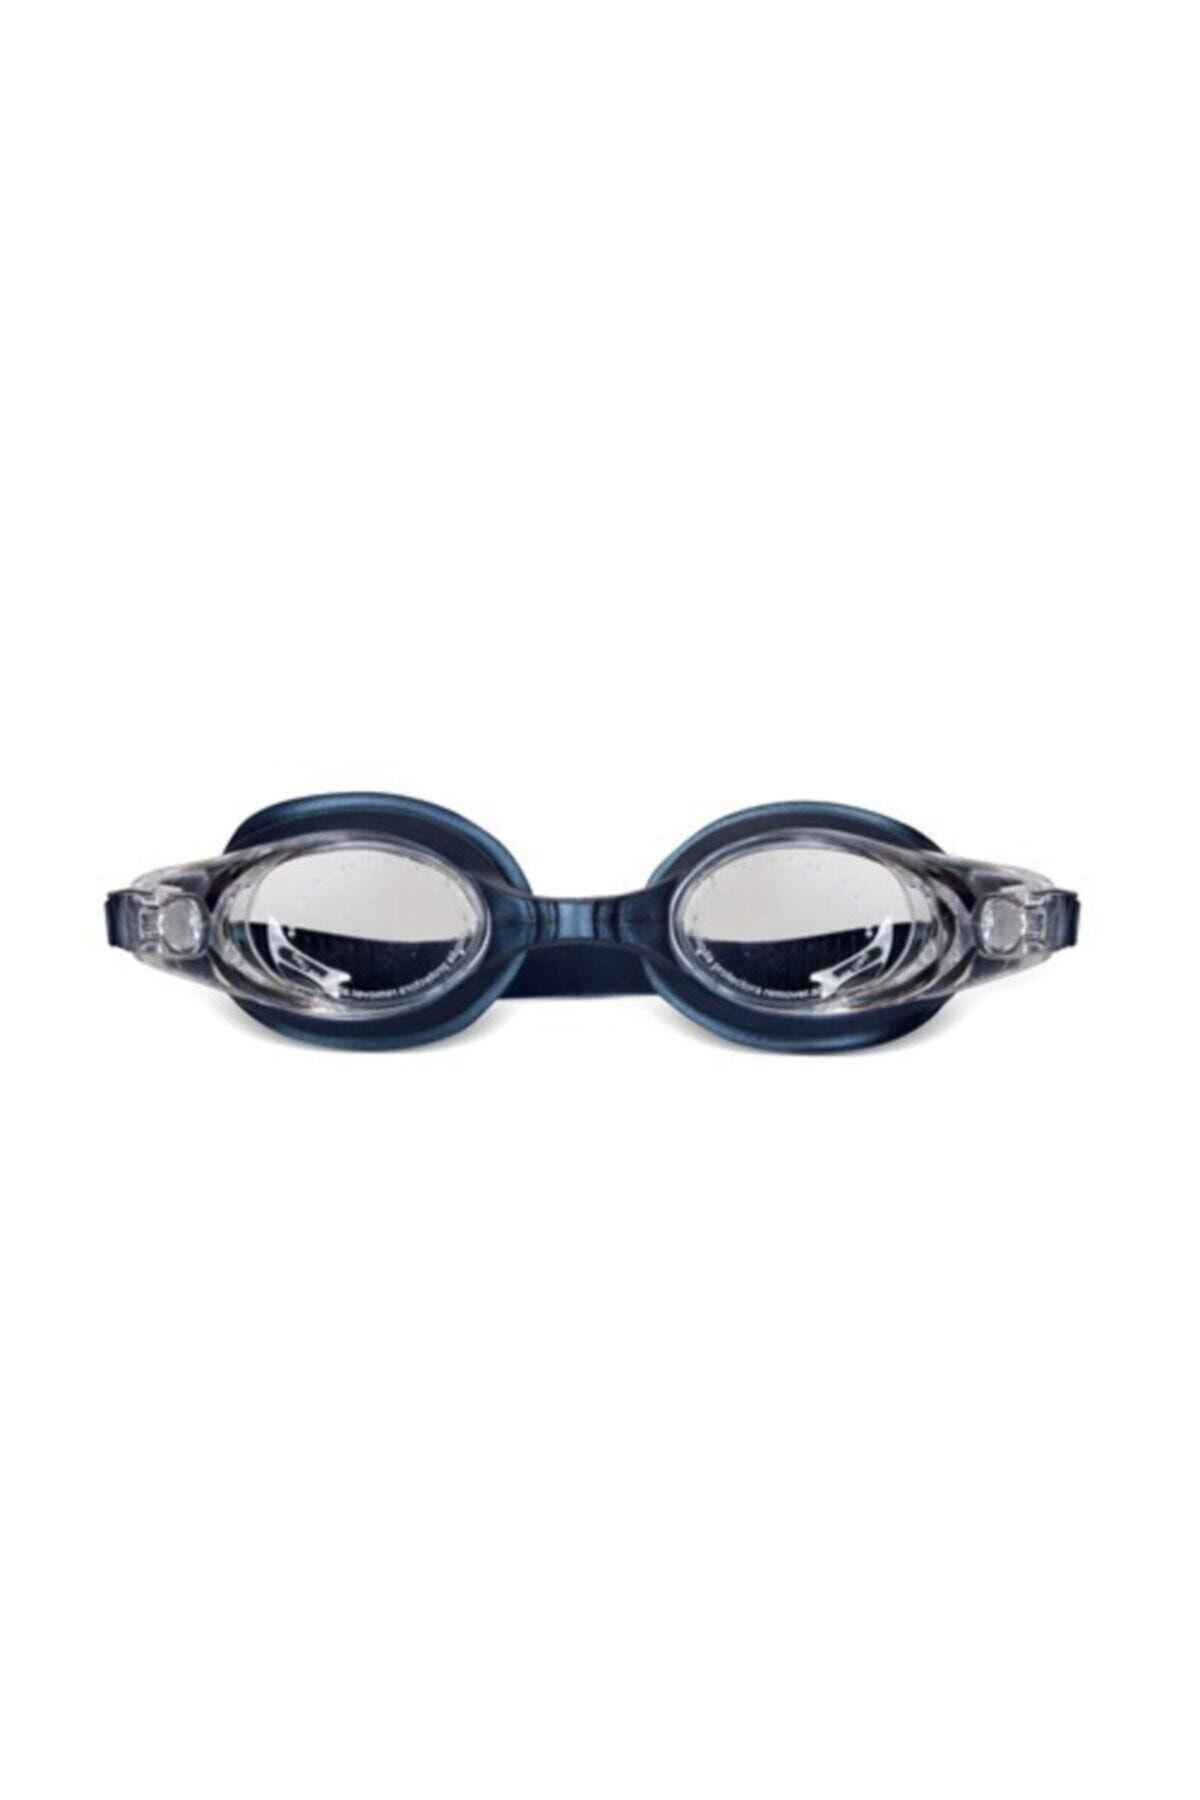 ALTIS Adg-22 Deniz Gözlüğü Mavi